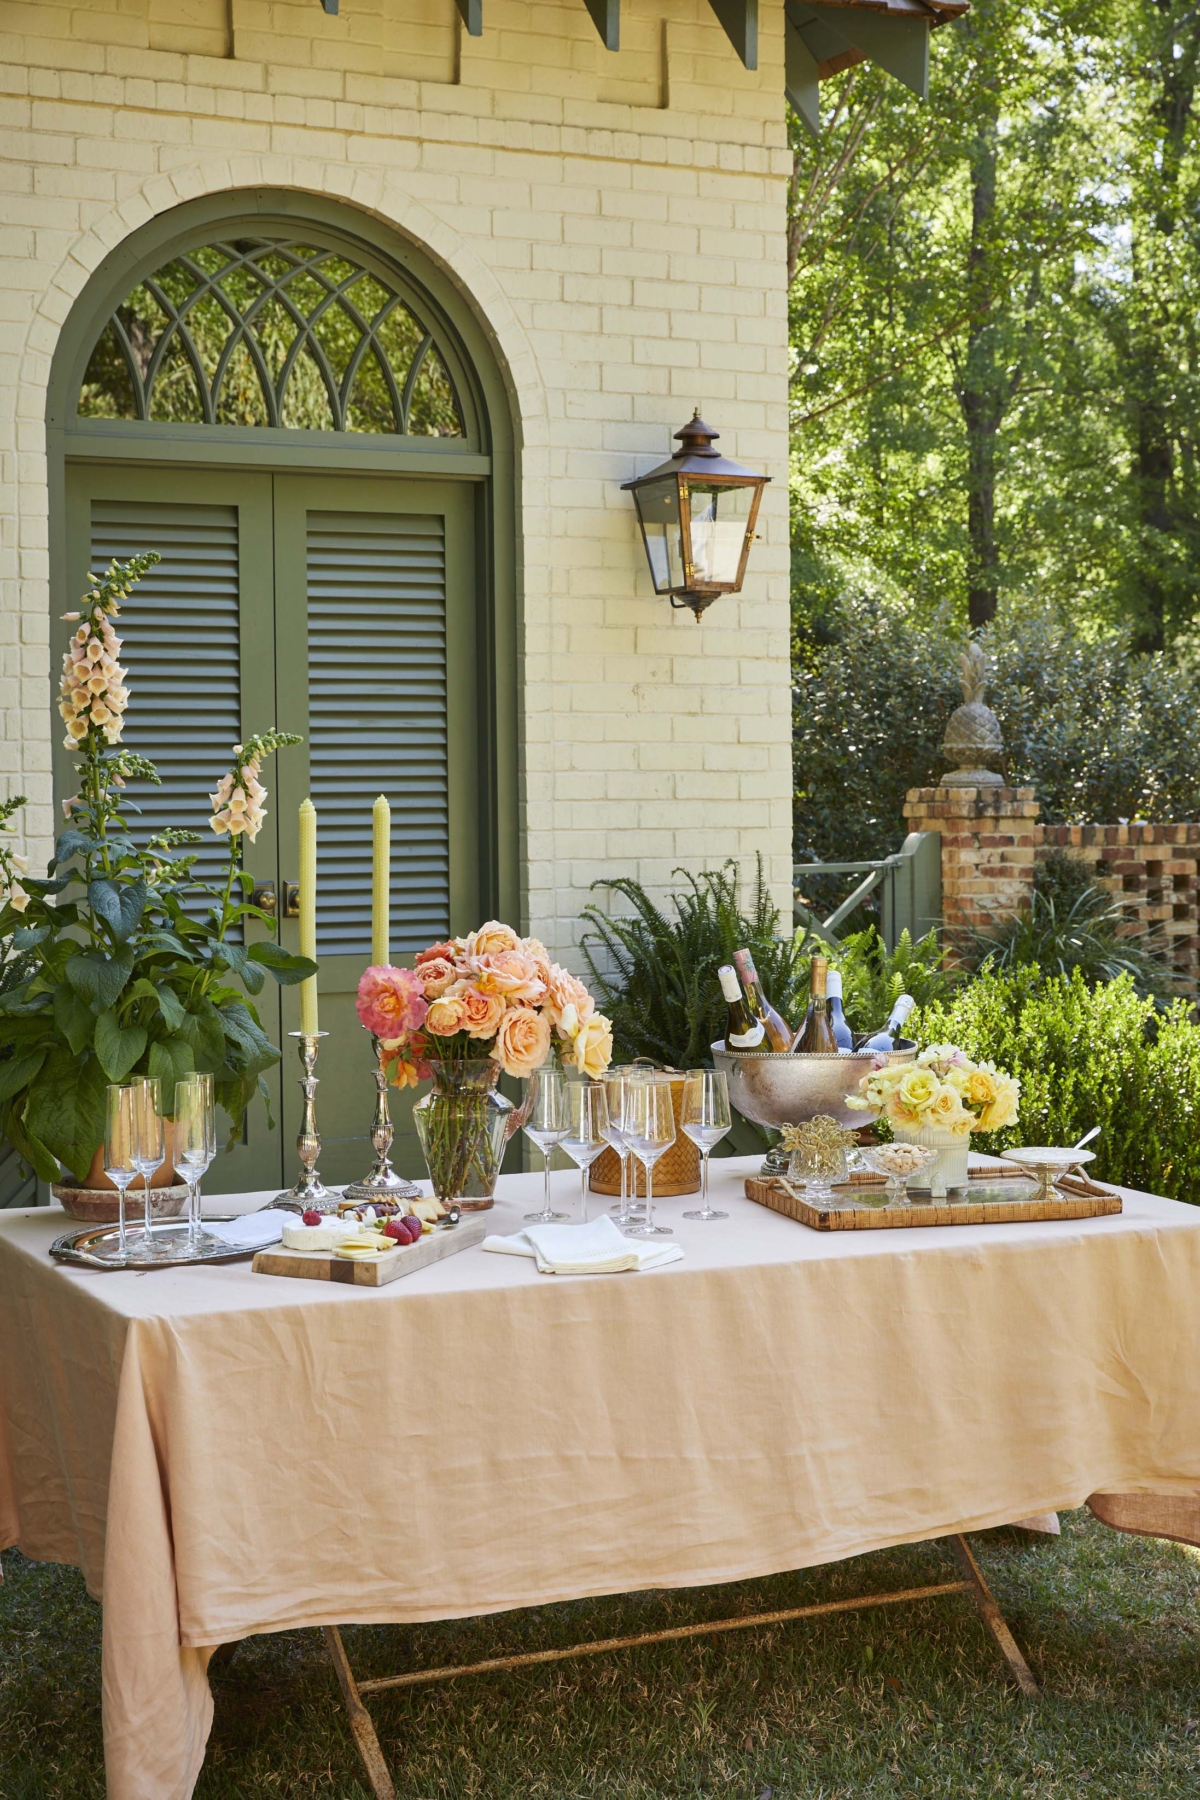 Hoa hồng và hoa mao địa hoàng nâng tầm chiếc bàn ngoài trời được chuyên gia thiết kế nội thất và giải trí James T. Farmer bài trí. Ảnh chụp trong khu vườn ở Farmdale, tư gia của anh tại Perry, Georgia. (Ảnh: Emily Followill)